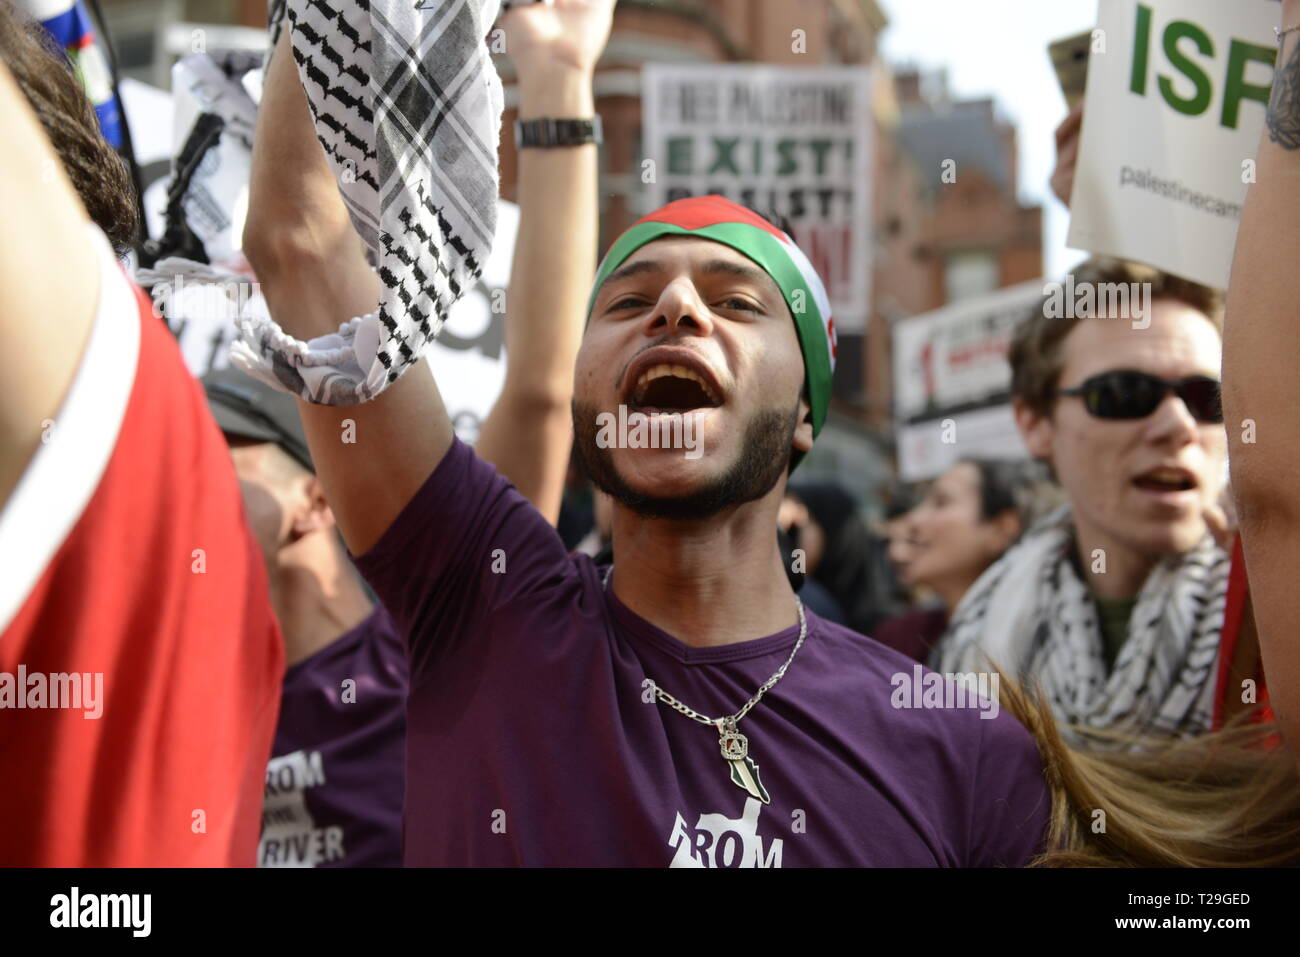 Un manifestant est vu scandant des slogans au cours de l'exister, résister, retour Rassemblement pour la Palestine à Londres. Les gens se rassemblent à l'extérieur de l'ambassade israélienne à Londres pour manifester contre le gouvernement israélien, et pour exiger le respect des droits fondamentaux des Palestiniens d'exister, de résister et de retour. Les Palestiniens réclament des protestations globales pour soutenir leur droit de revenir dans leurs villages. Rassemblement avait été organisé par la Campagne de Solidarité Palestine, Stop the War Coalition, le Forum palestinien en Grande-Bretagne, les amis d'Al- Aqsa, et l'Association des musulmans de Grande-Bretagne. Banque D'Images